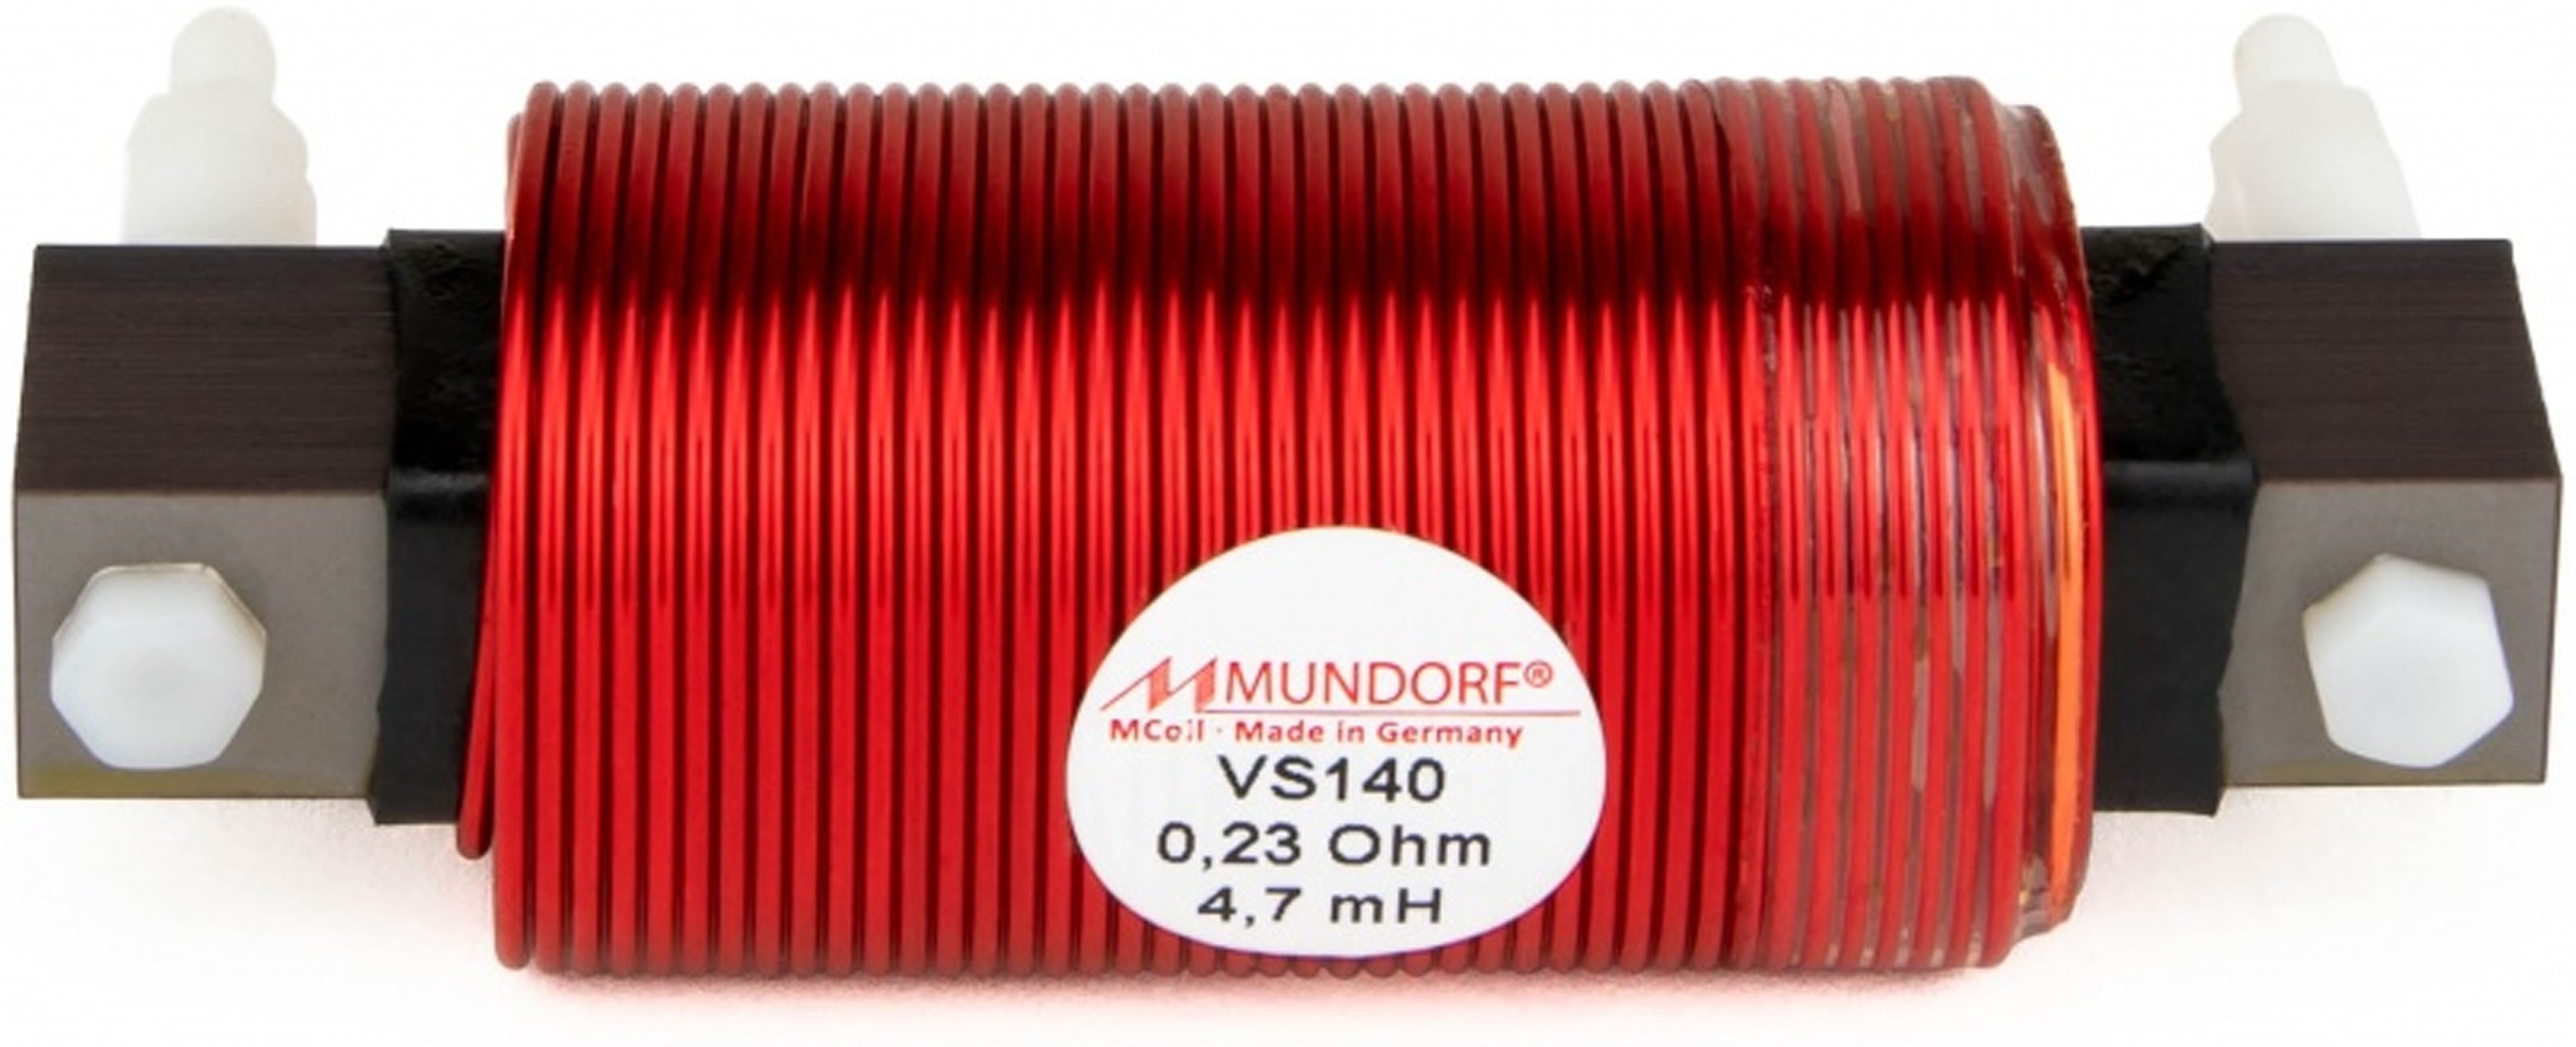 MUNDORF VS140 MCOIL ICORE S106 Copper Coil Feron Core 5.6mH